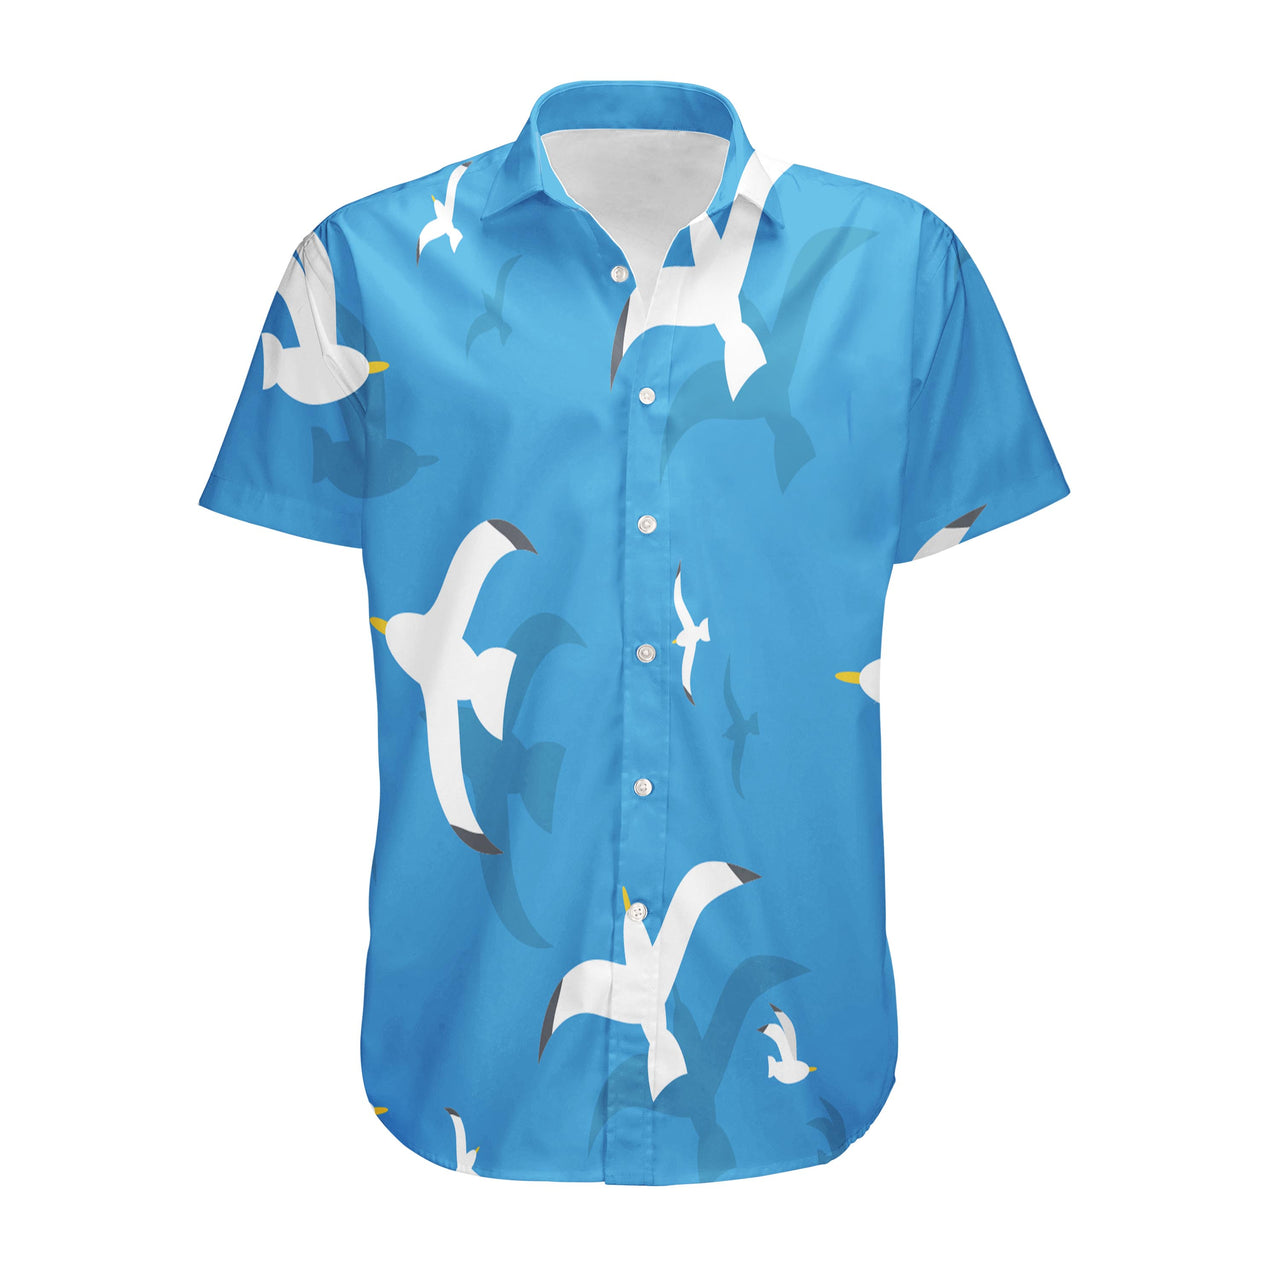 Seamless Seagulls Designed 3D Shirts